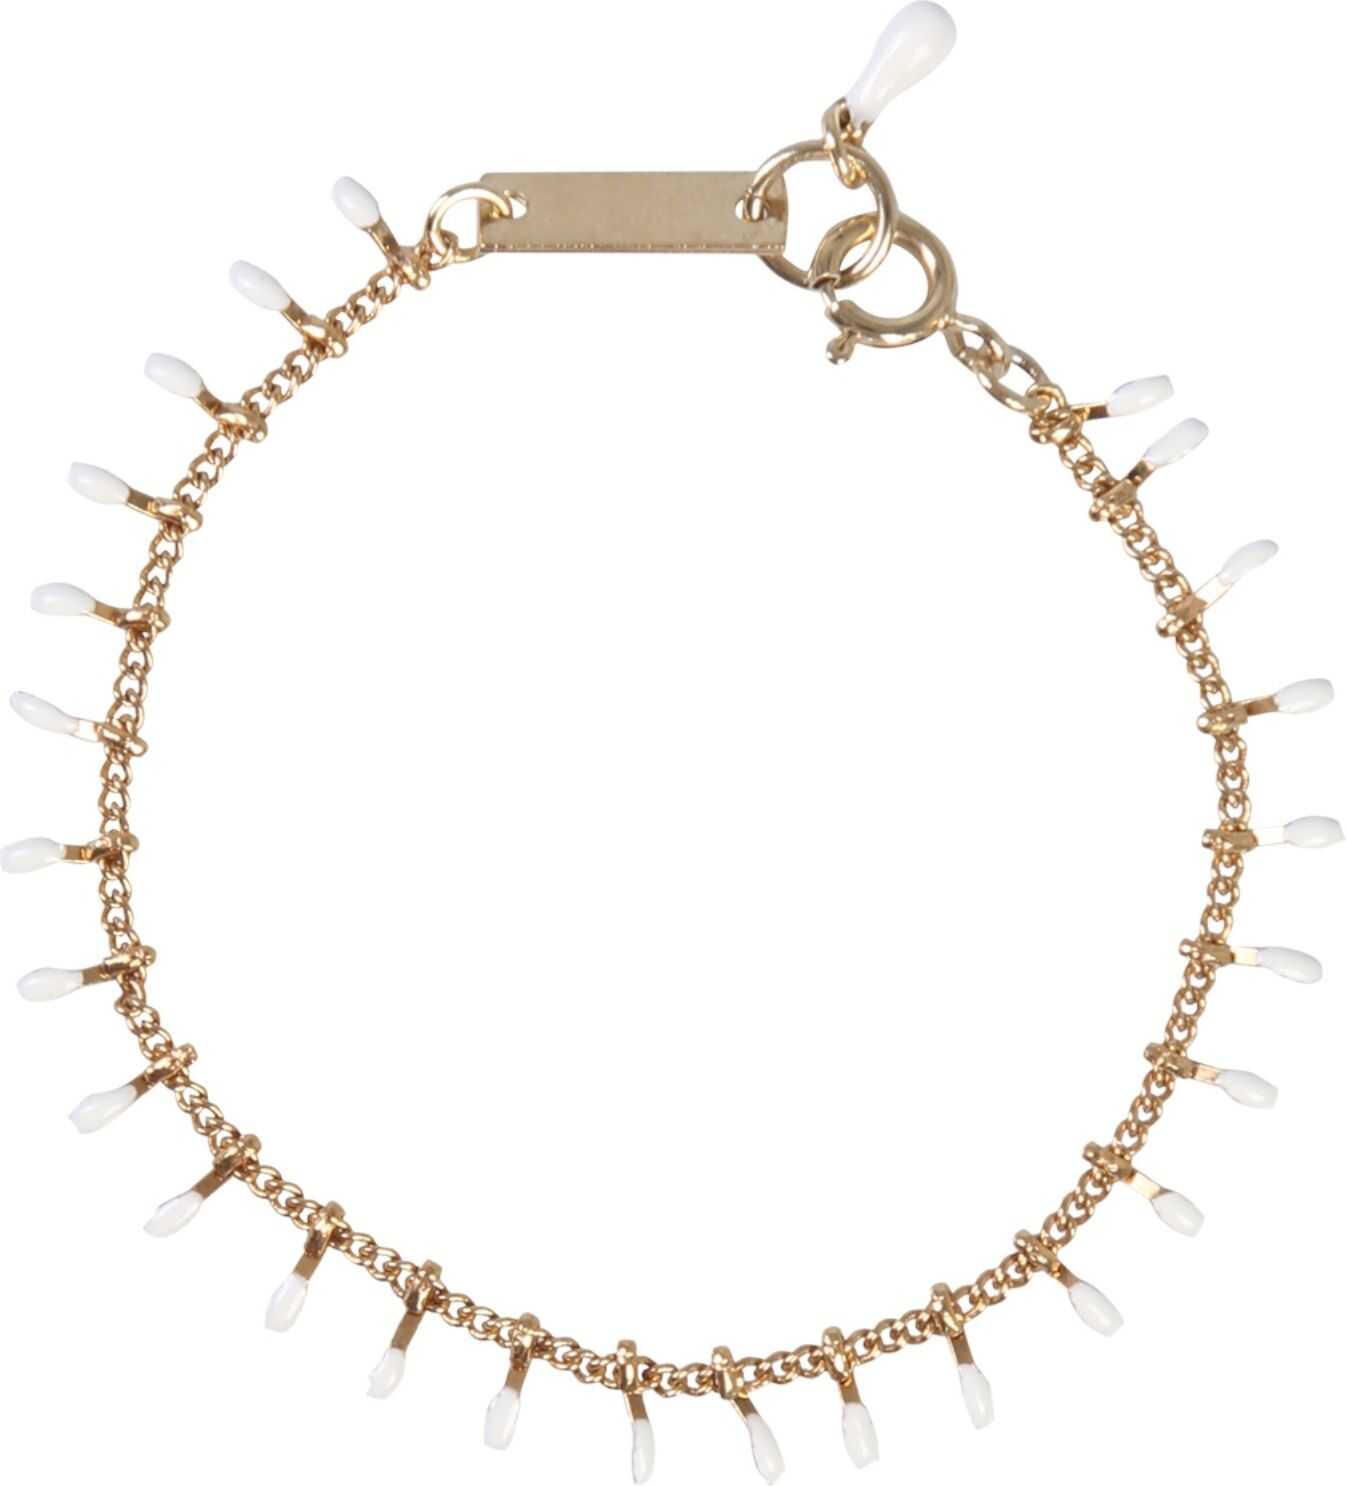 Isabel Marant Bracelet With Resin Details GOLD